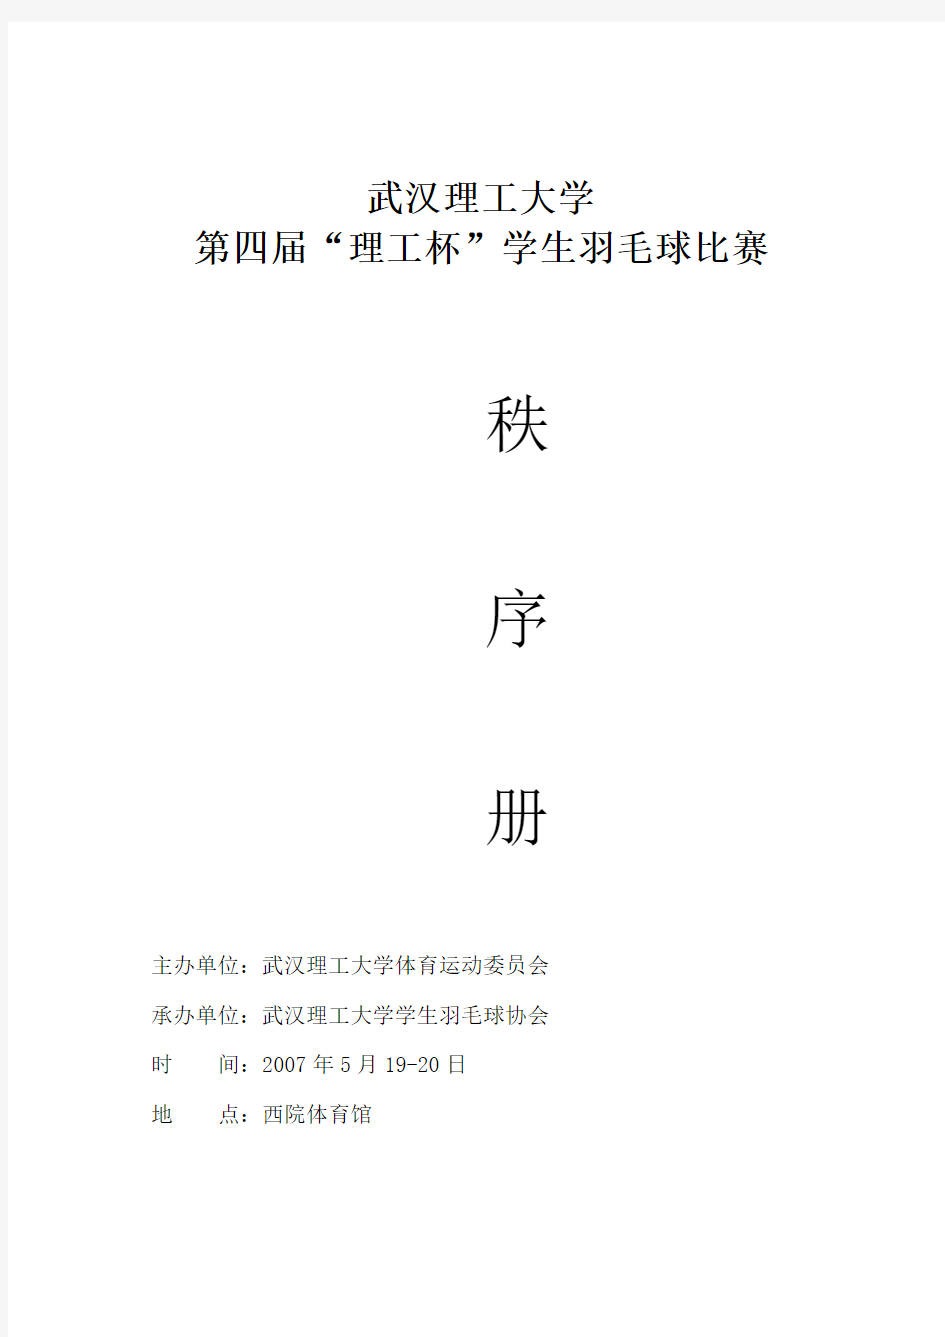 武汉理工大学第四届理工杯学生羽毛球比赛秩序册